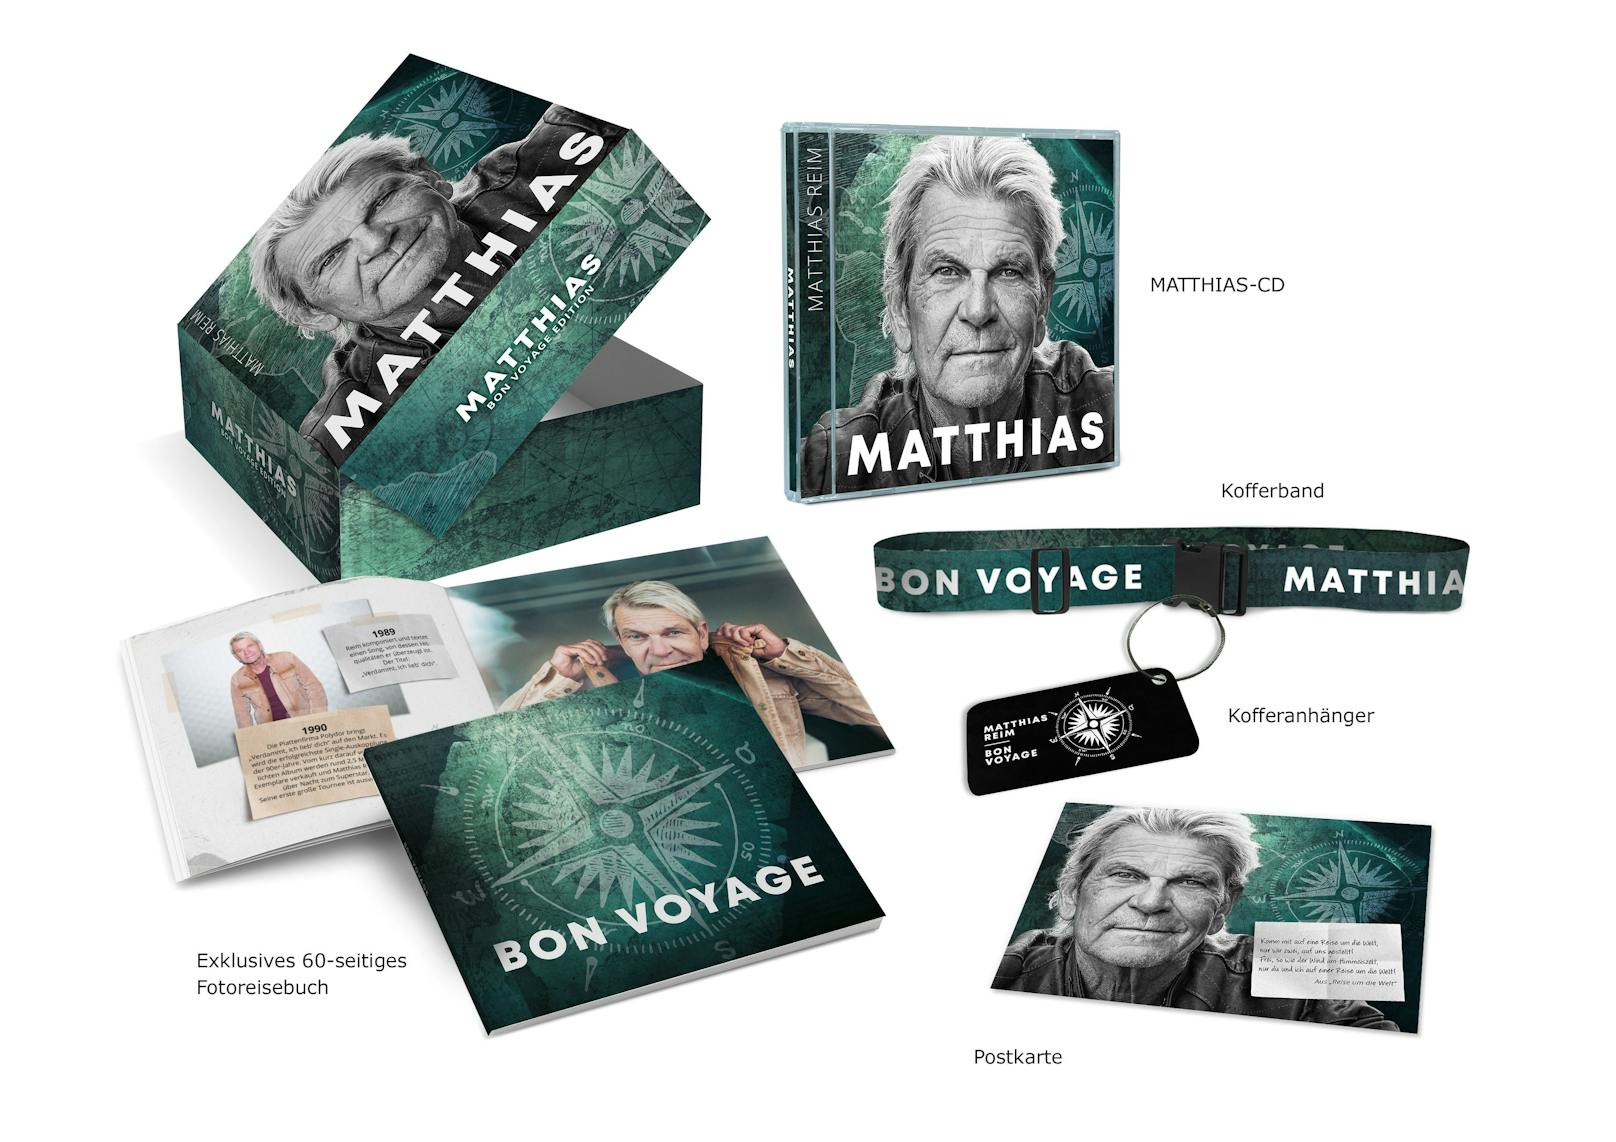 Jetzt teilnehmen &amp; gewinnen: Zum neuen Album von Matthias Reim kannst du eine einzigartige und signierte Fan-Box ergattern.